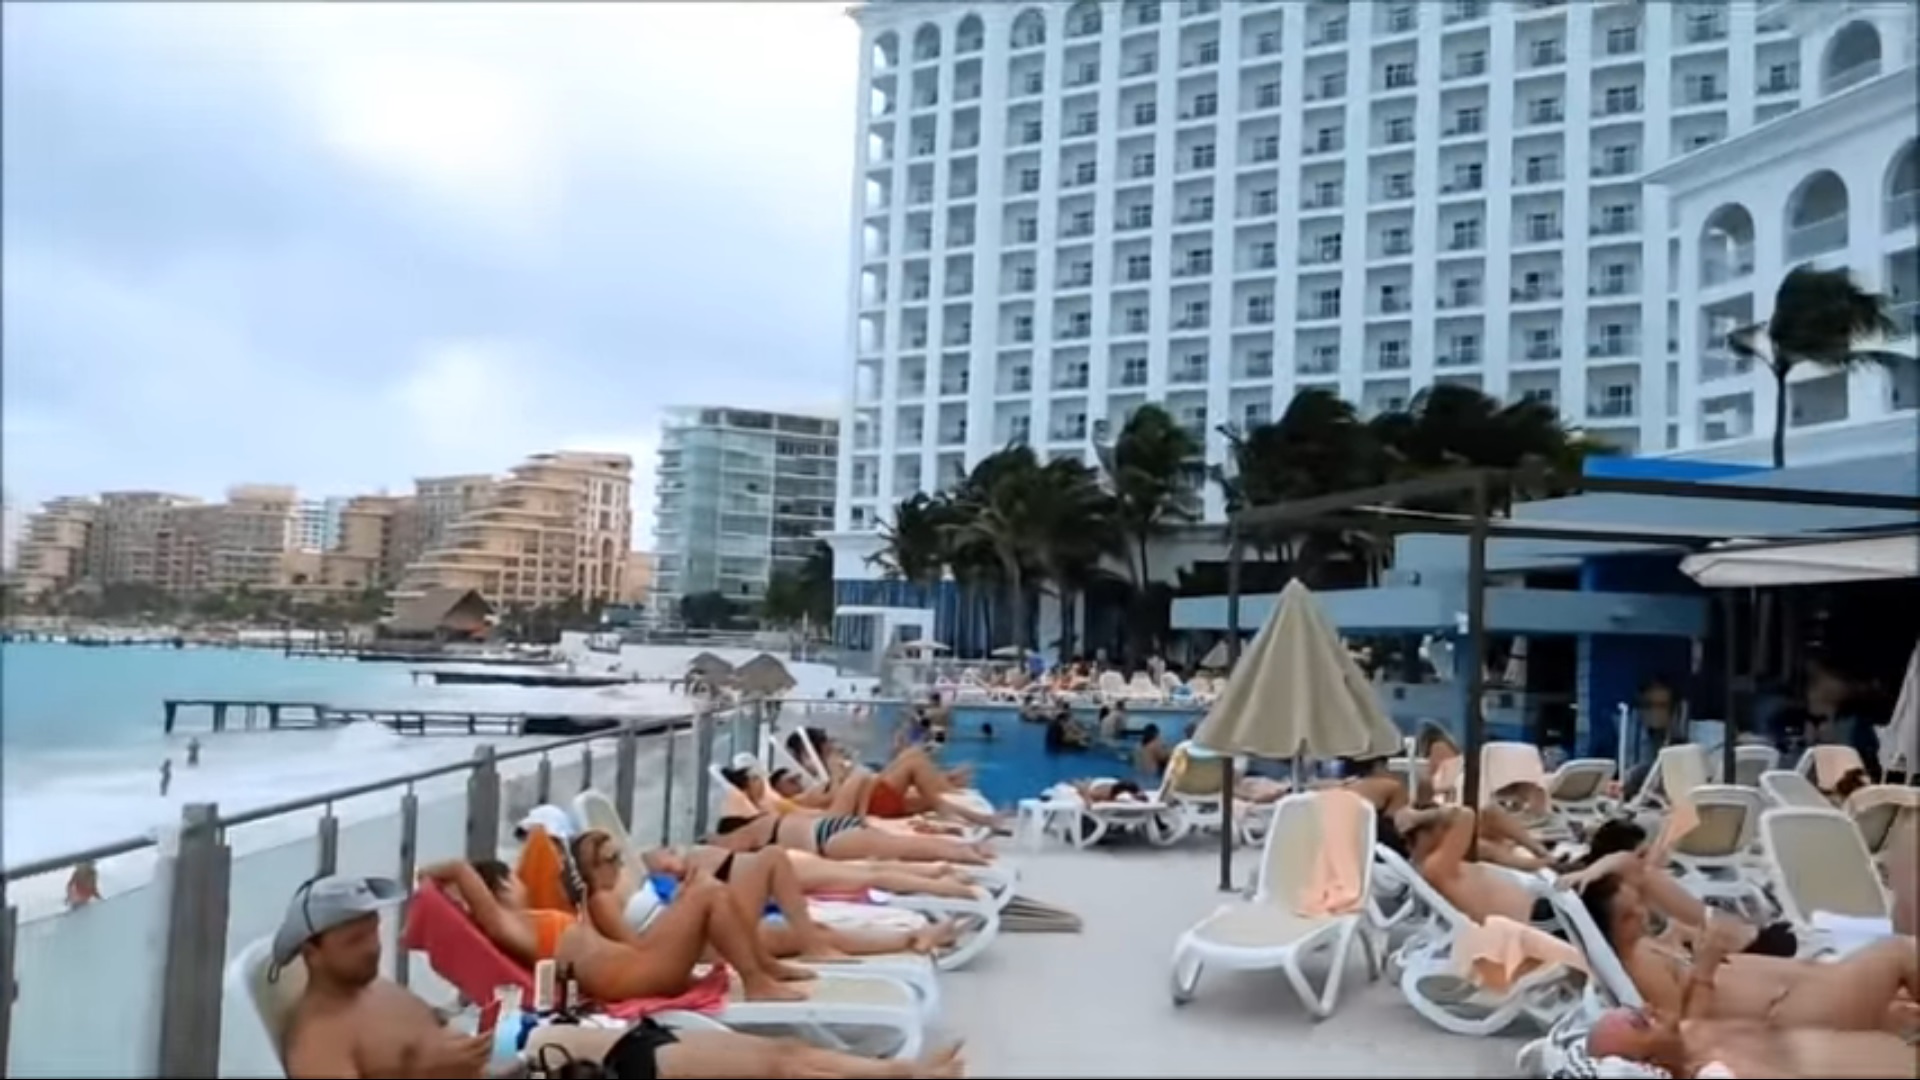 Los mejores precios del hotel Riu Cancún temporada alta y baja